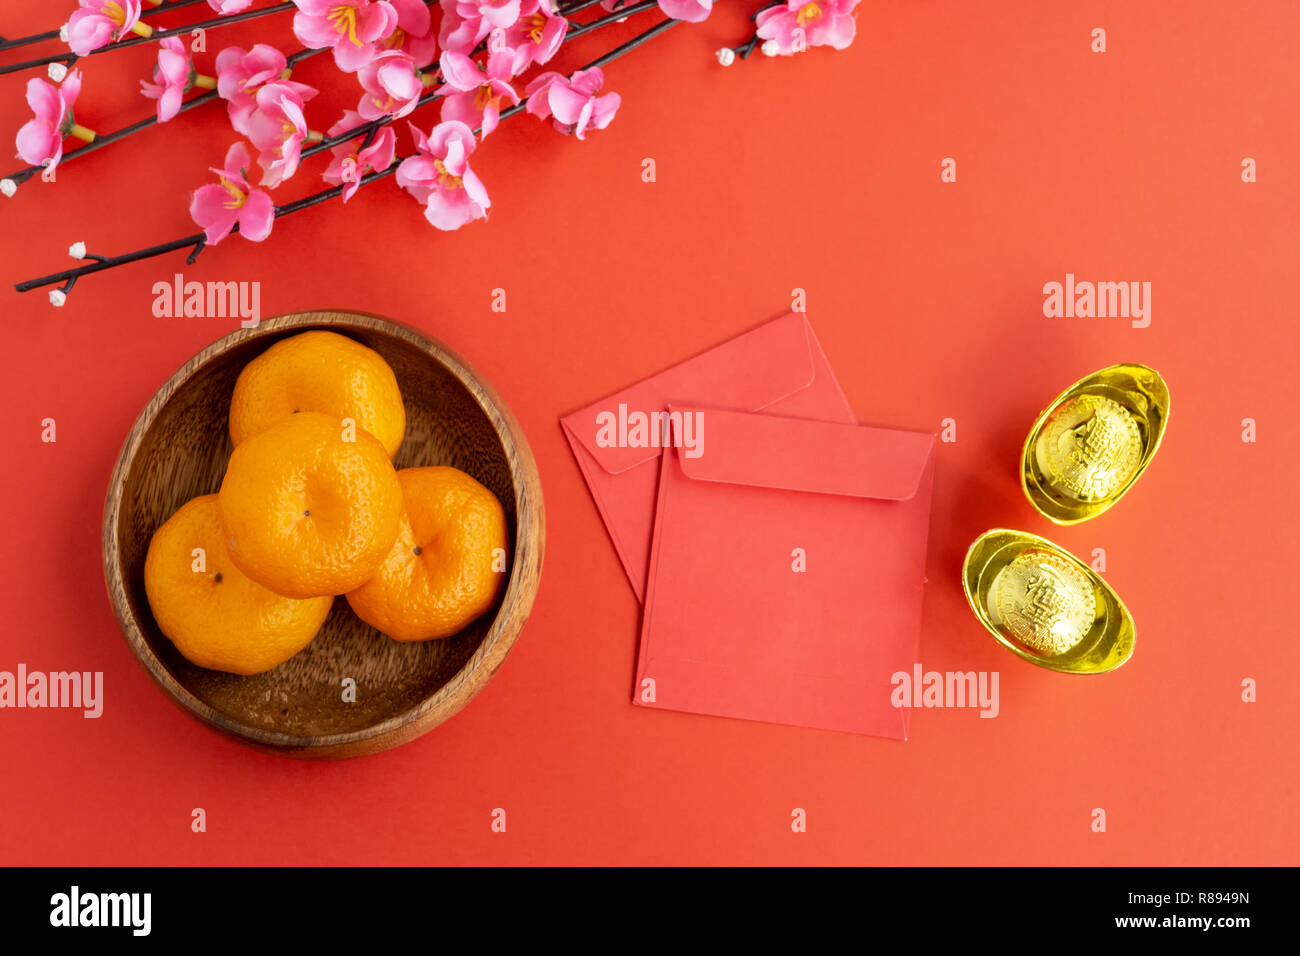 Año Nuevo Chino laicos plano de fondo - Flor de Cerezo, mandarinas, naranjas, rojos y envuelven los lingotes de oro sobre fondo rojo. Foto de stock